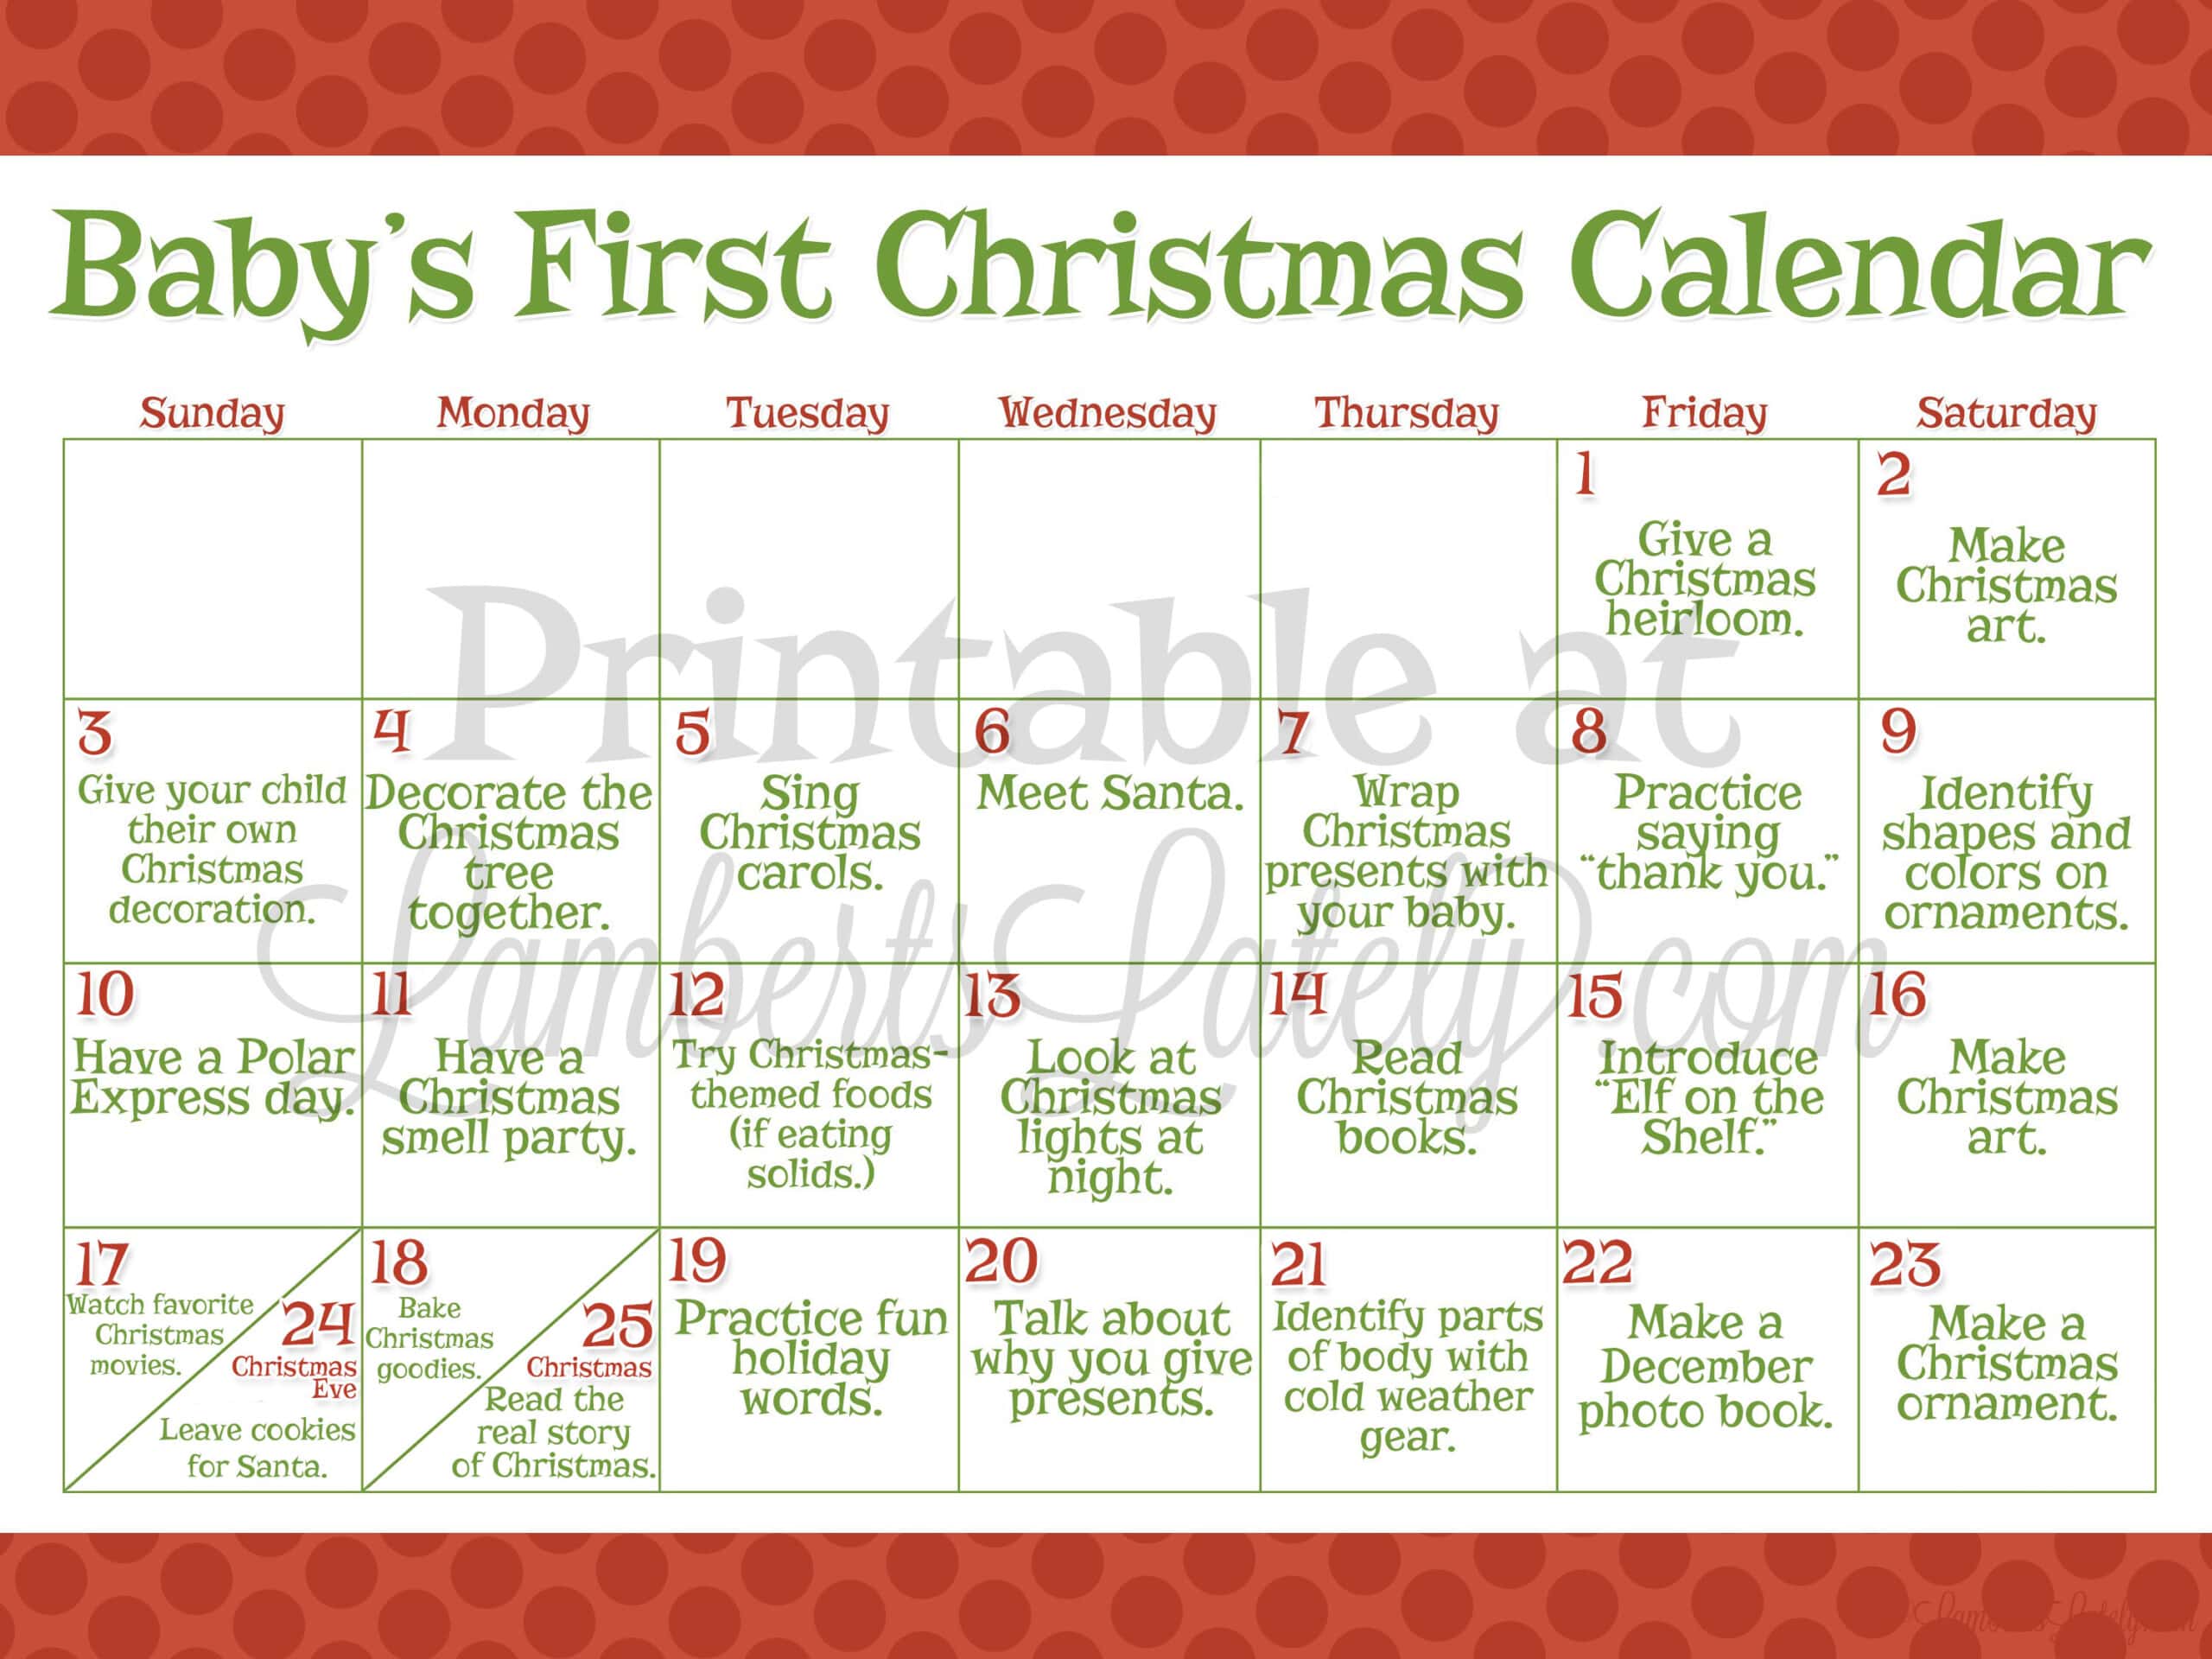 babys first christmas calendar printable.